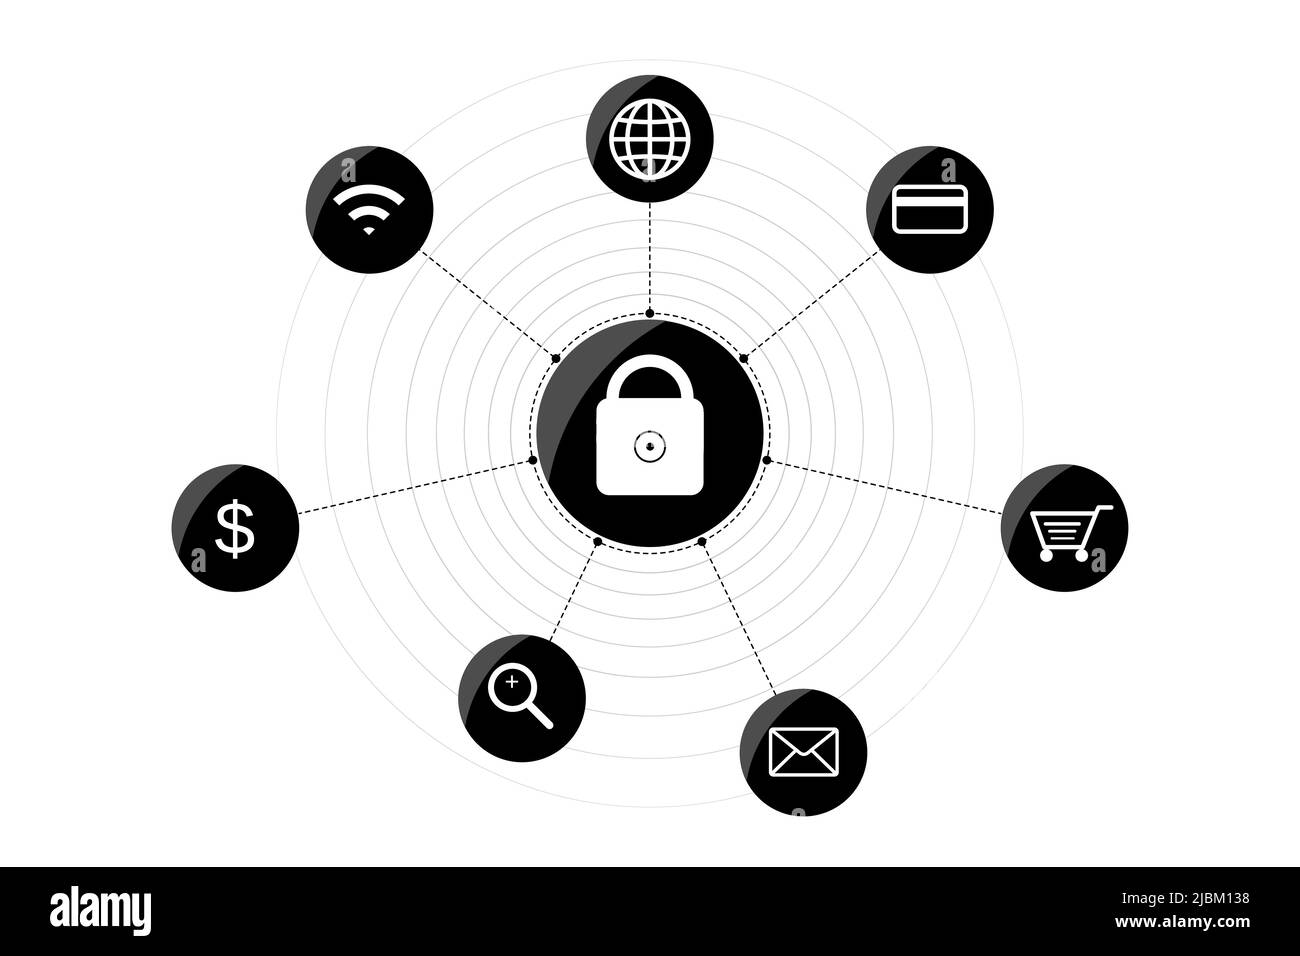 Datenschutzkonzept für Cybersicherheit. Symbole für Online-Daten, Verschlüsselung, Sicherheit virtueller Informationen, Passwort, Netzwerkschutz, Firewall, s Stock Vektor